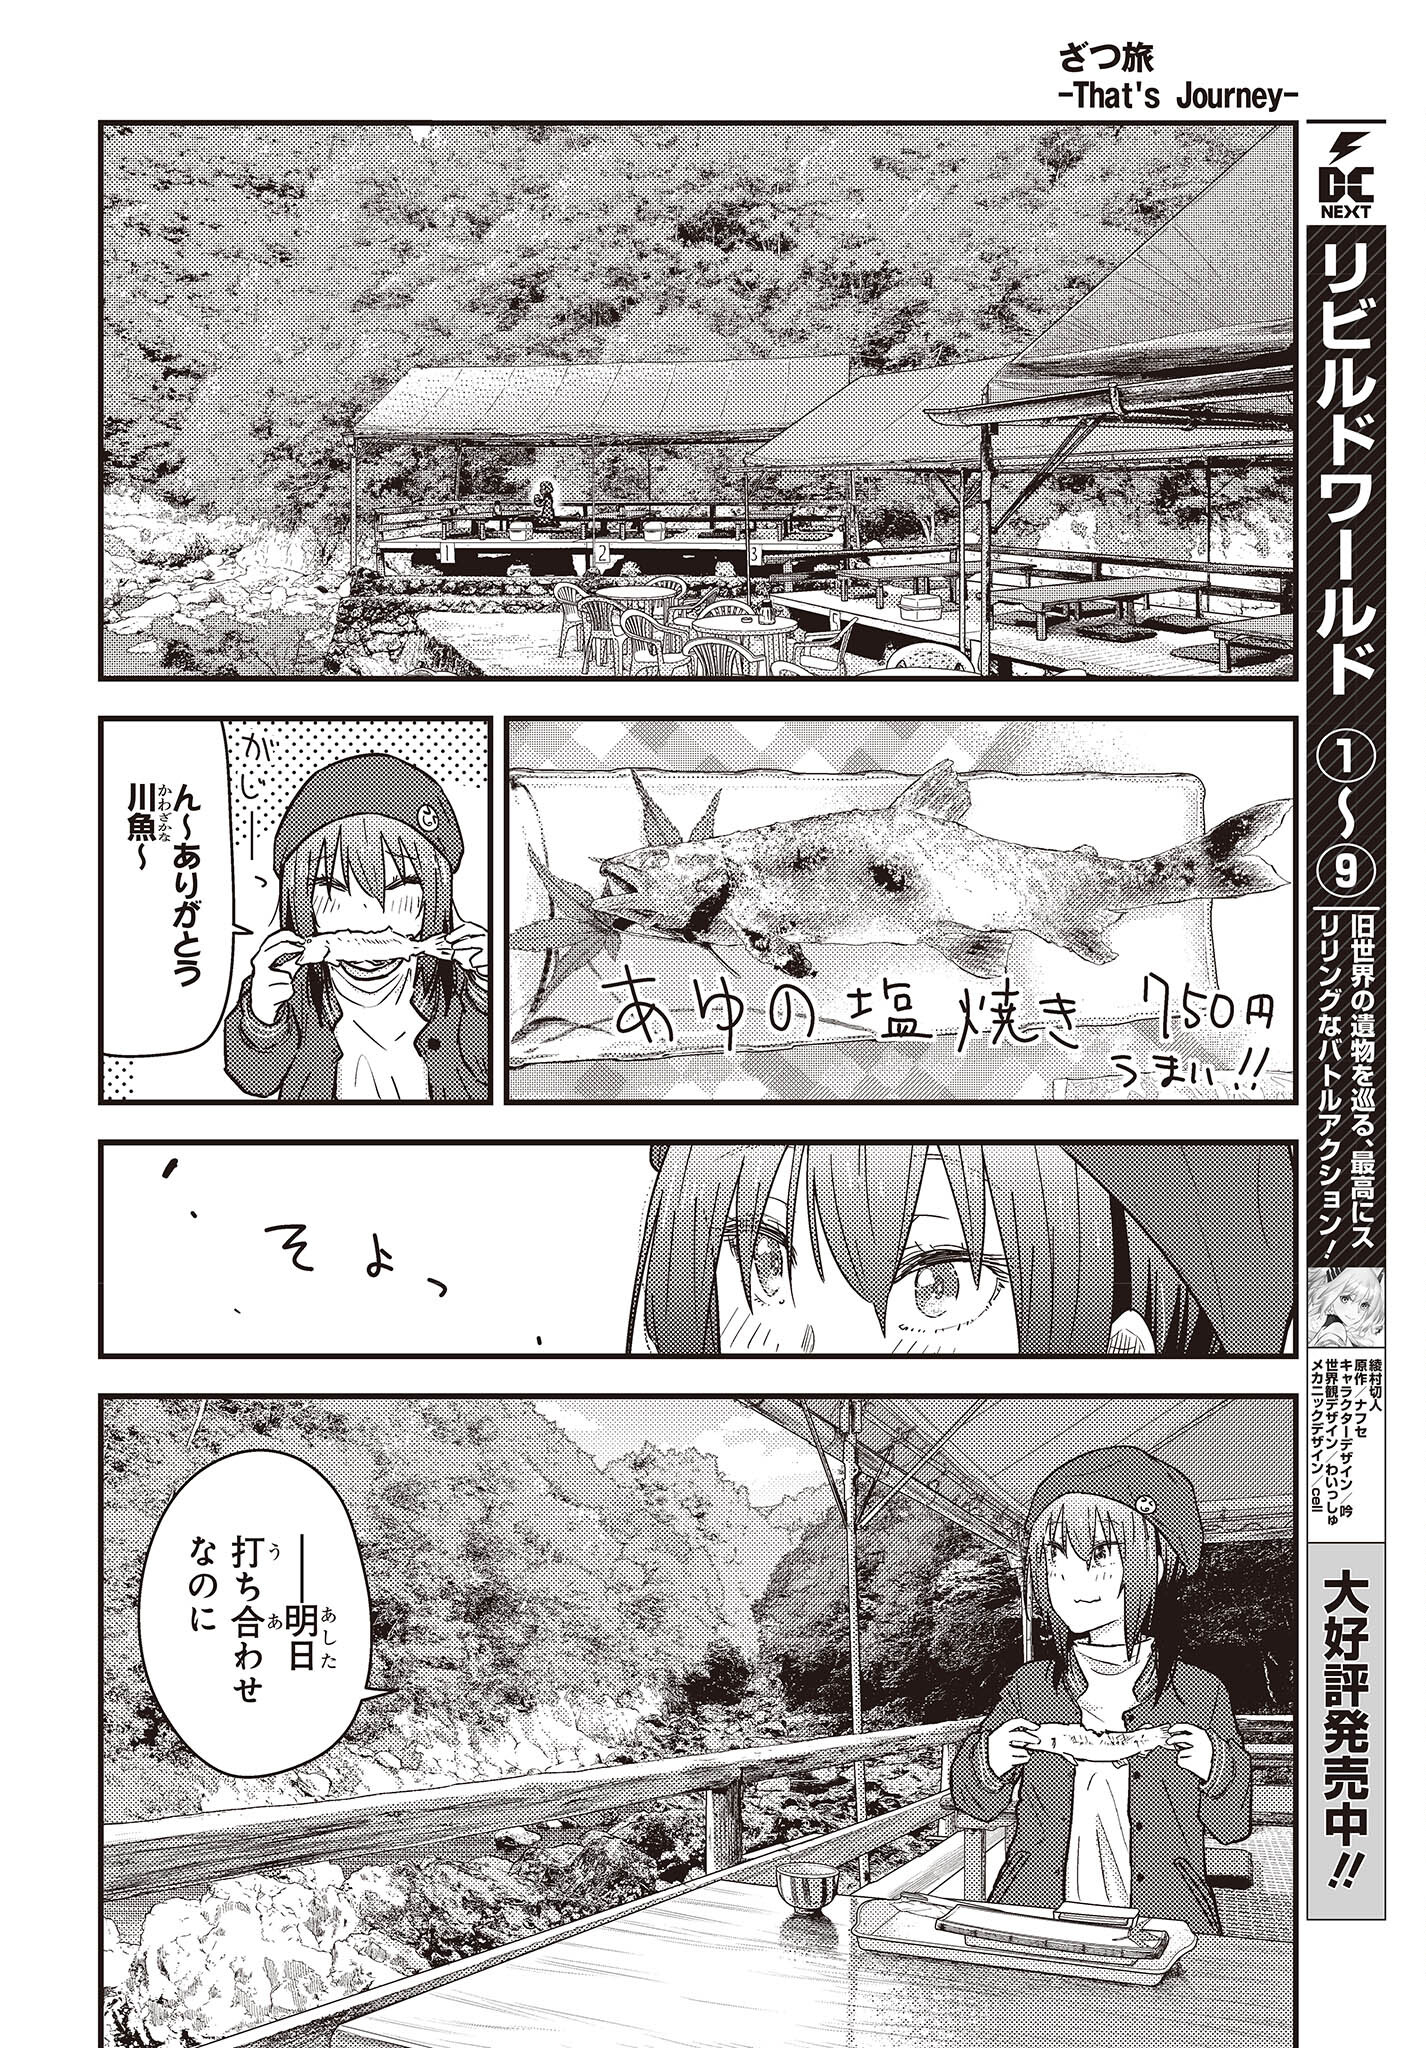 ざつ旅-That’s Journey- 第29話 - Page 20